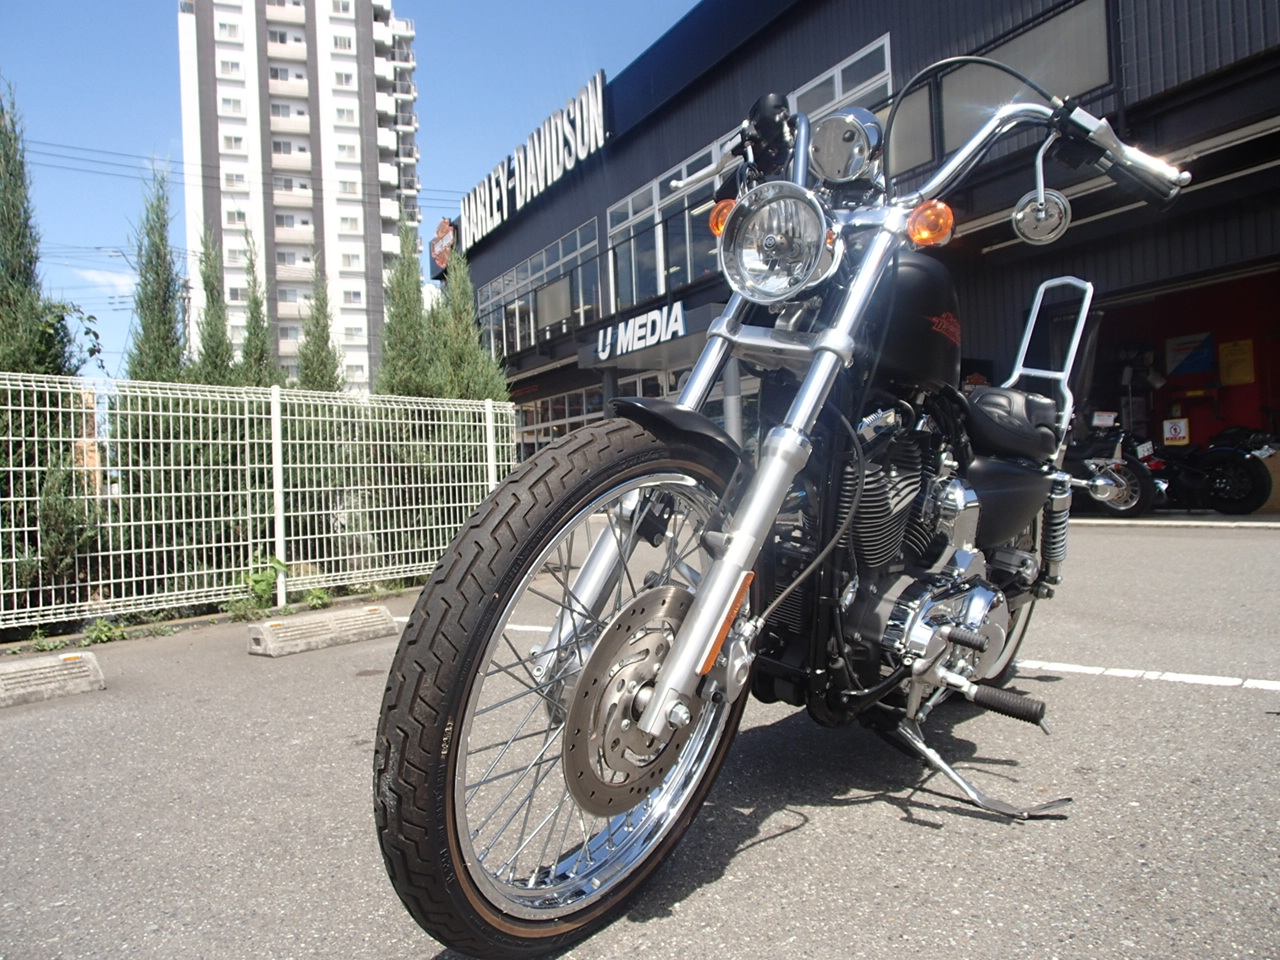 Xl10vオリジナルカスタム車 最新情報 U Media ユーメディア 中古 バイク 新車バイク探しの決定版 神奈川 東京でバイク探すならユーメディア